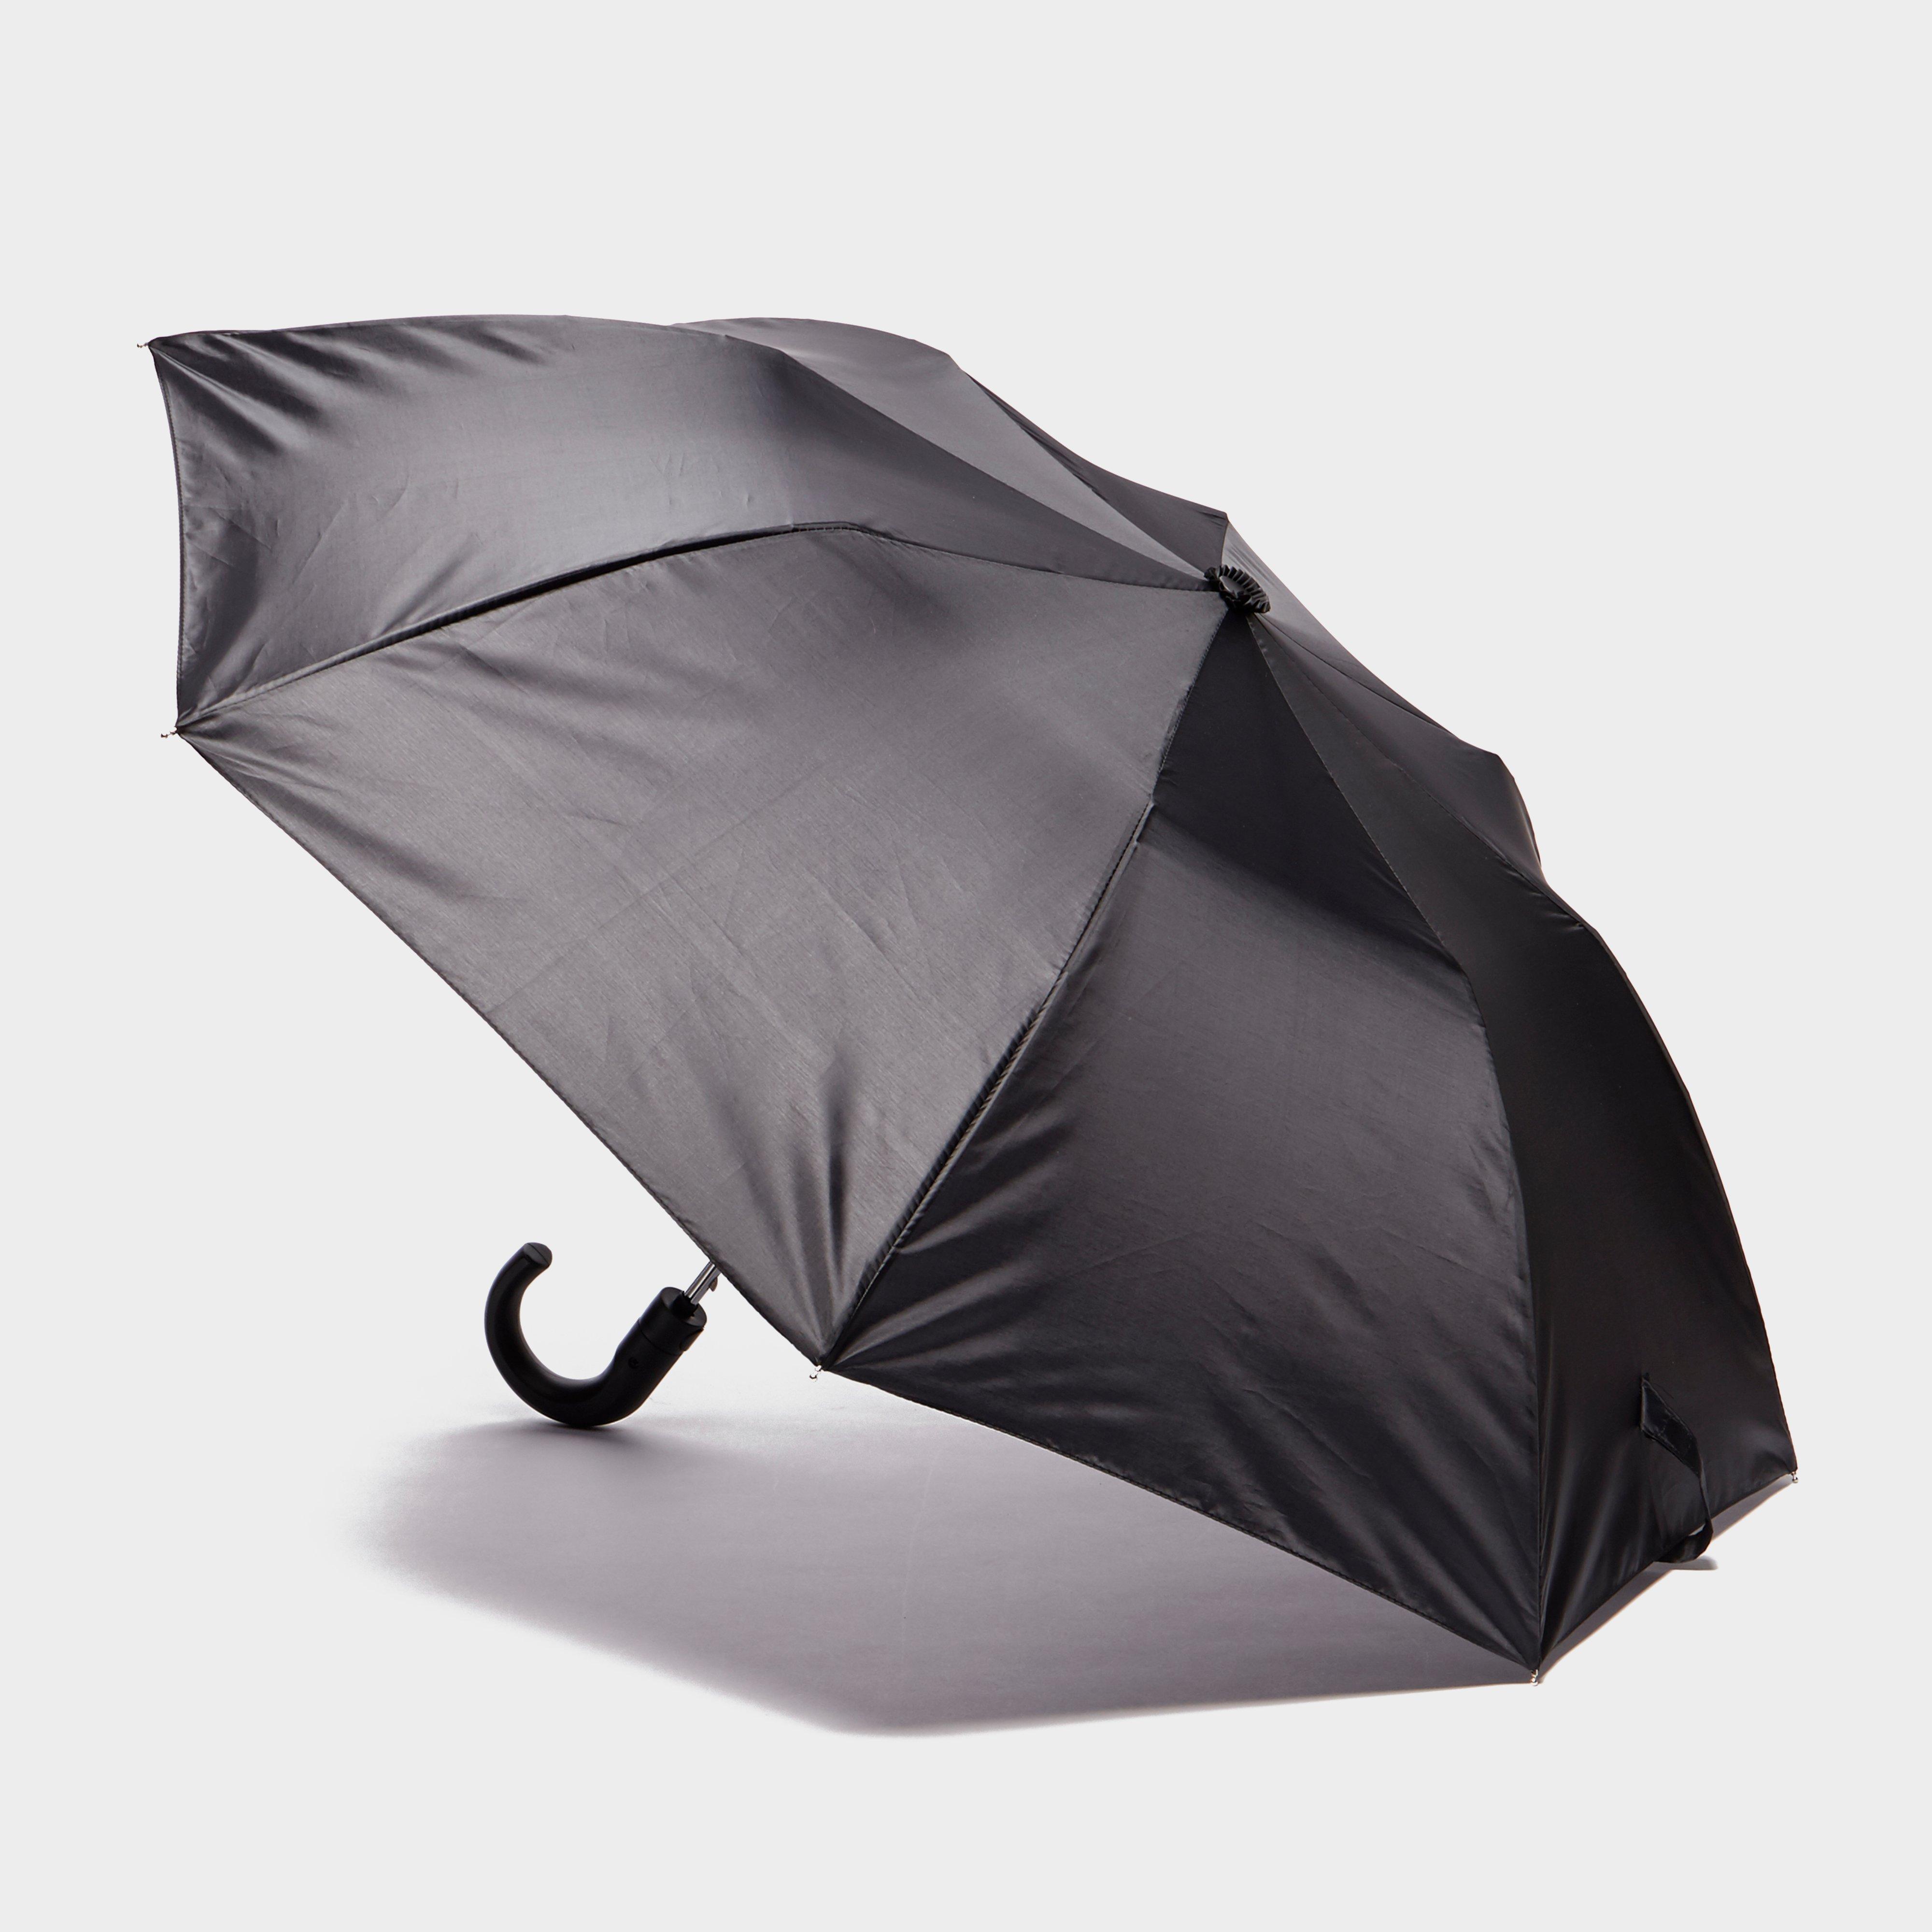 Peter Storm Mens Pop-up Crook Umbrella - Black/blk  Black/blk